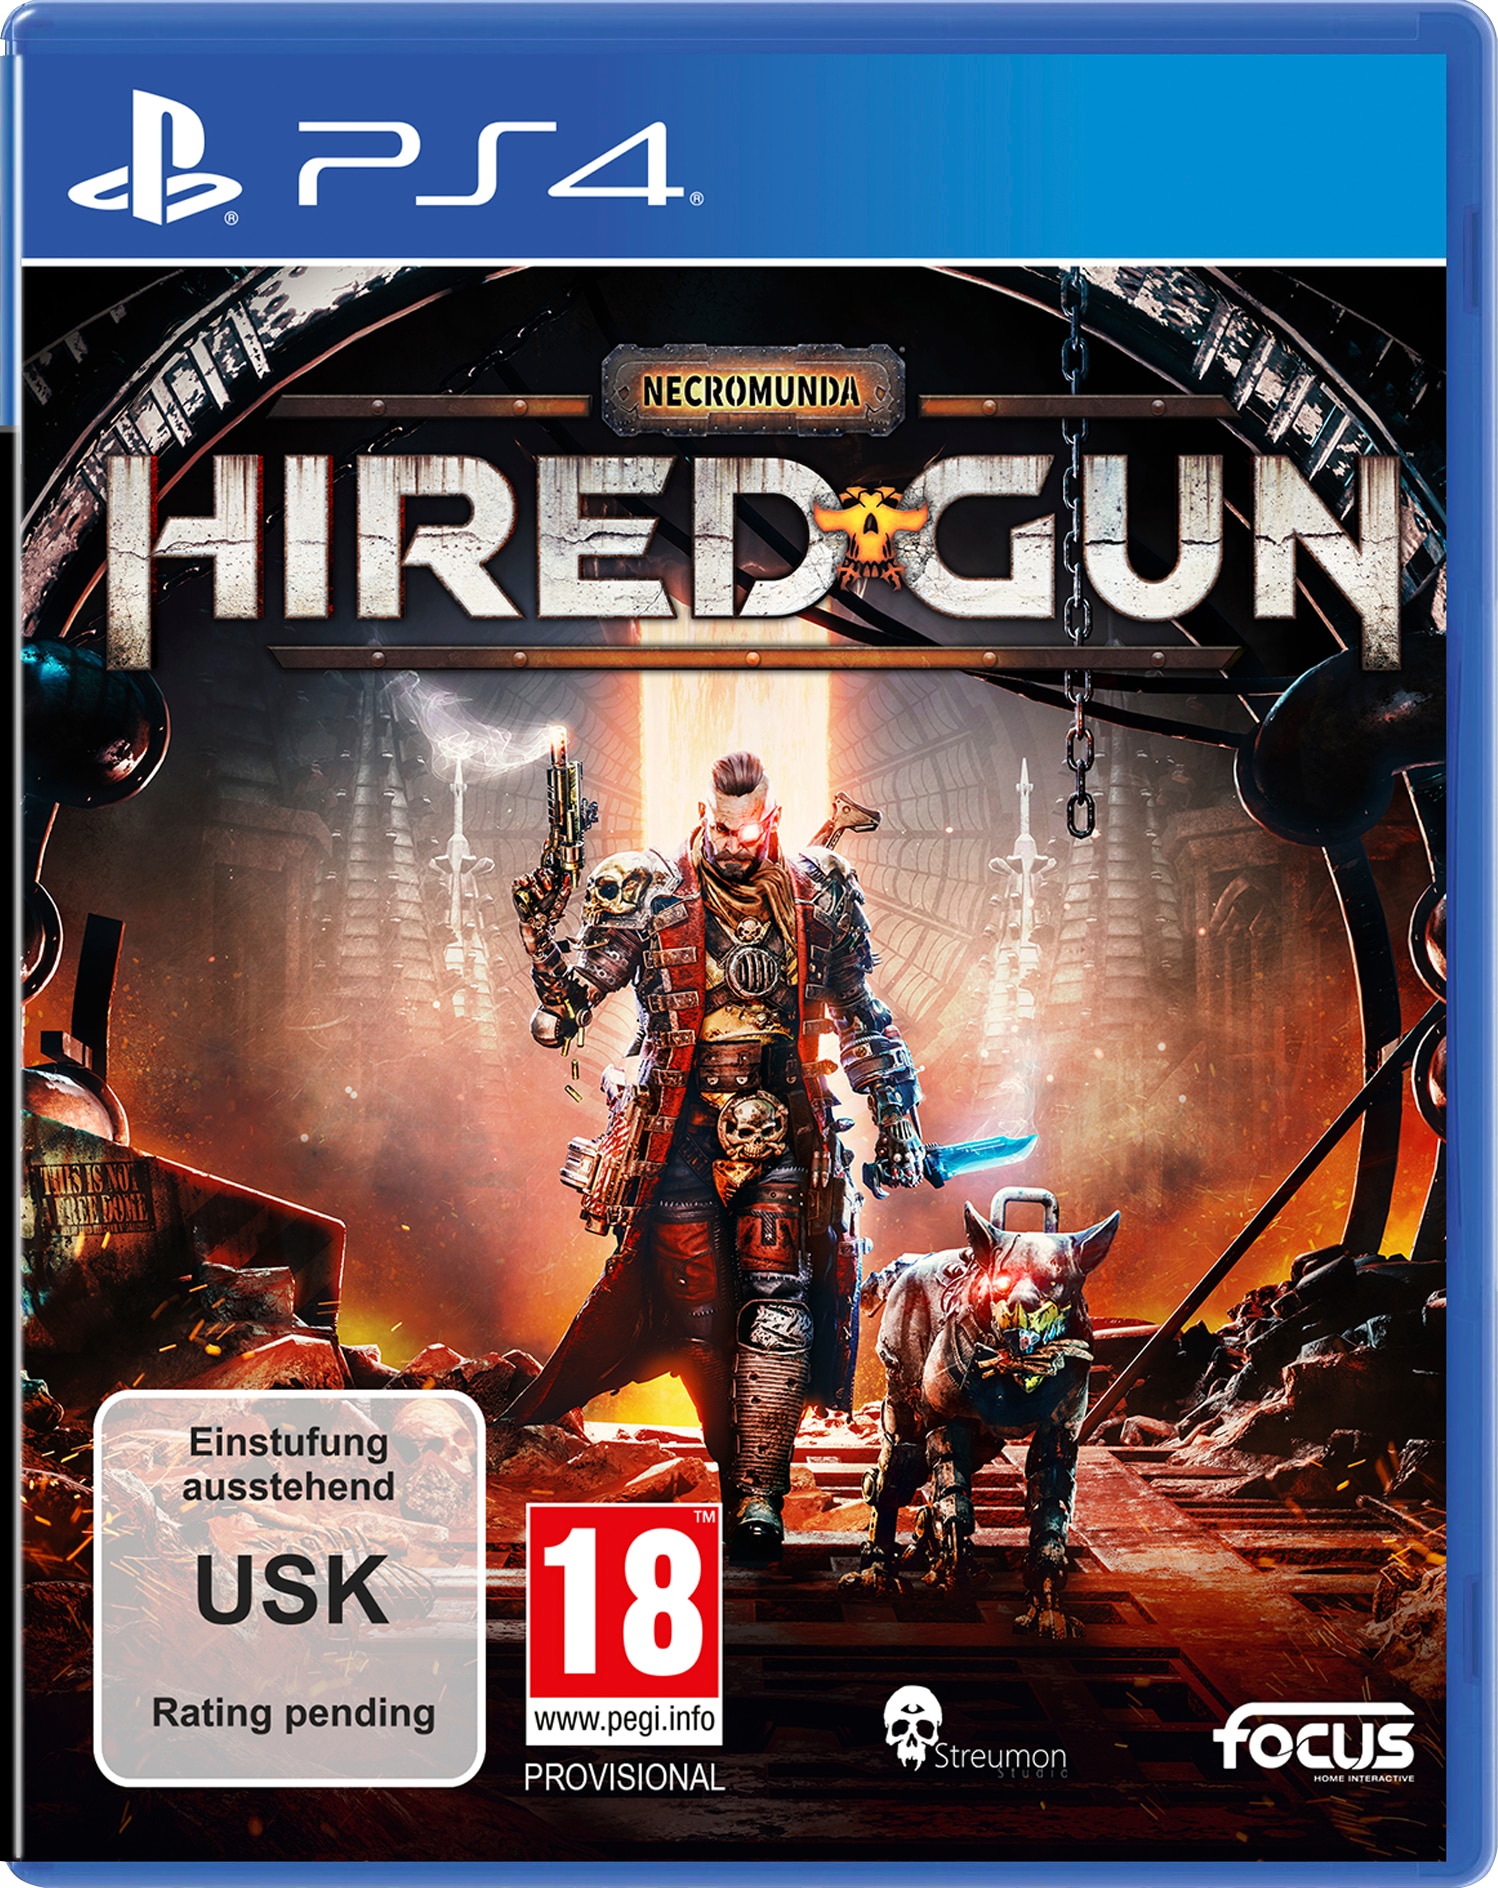 Spielesoftware »Necromunda: Hired Gun«, PlayStation 4